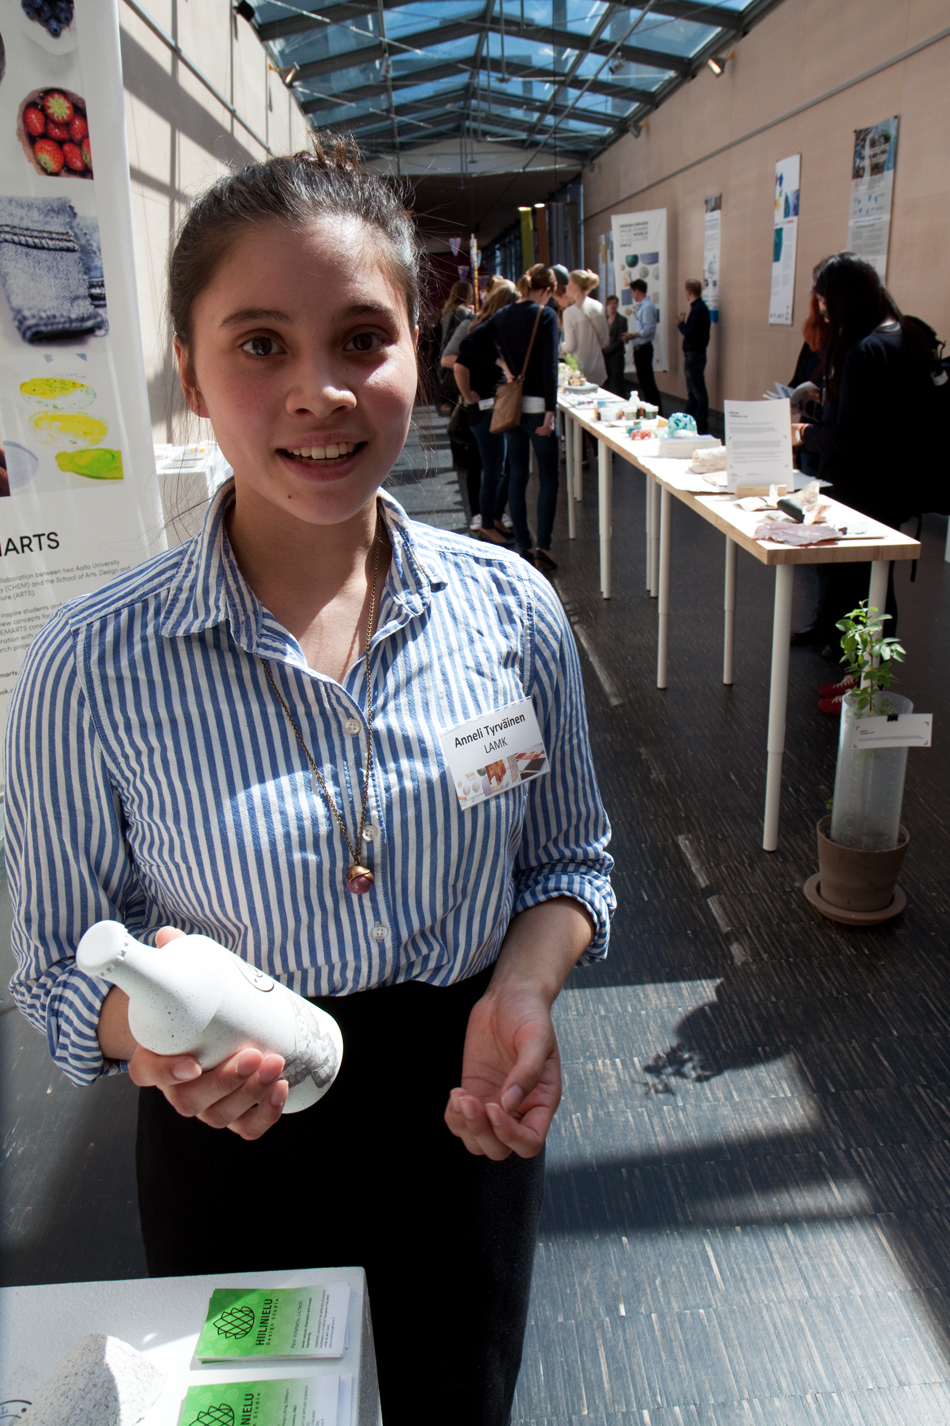 Lahden ammattikorkeakoulun pakkaus- ja brändimuotoilun opiskelija Anneli Tyrväinen esitteli tulevaisuuden olutpulloa Designing Cellulose for the Future II -näyttelyssä. Kuva: Anna Kauppi